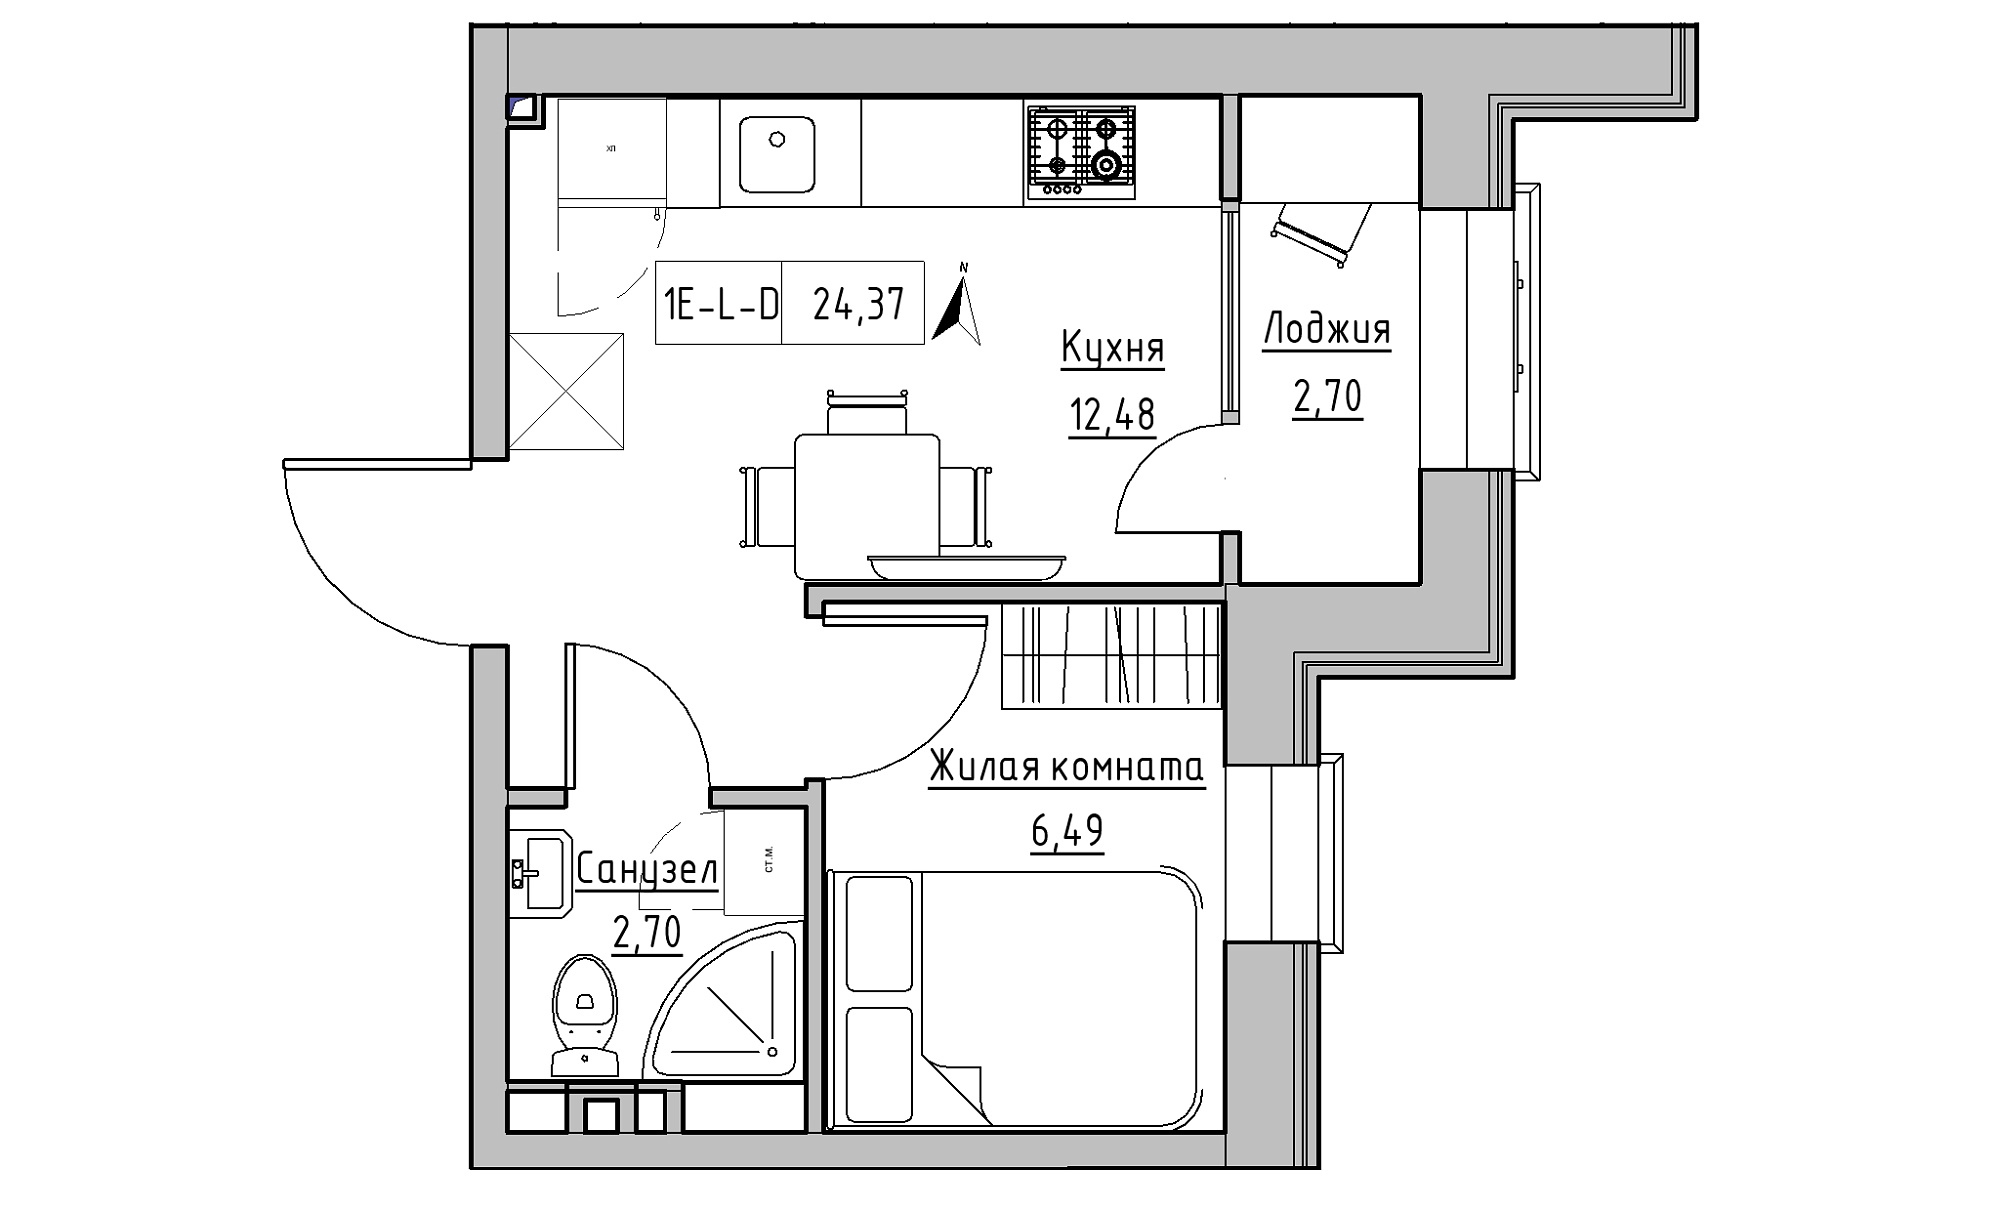 Планування 1-к квартира площею 24.37м2, KS-016-04/0015.